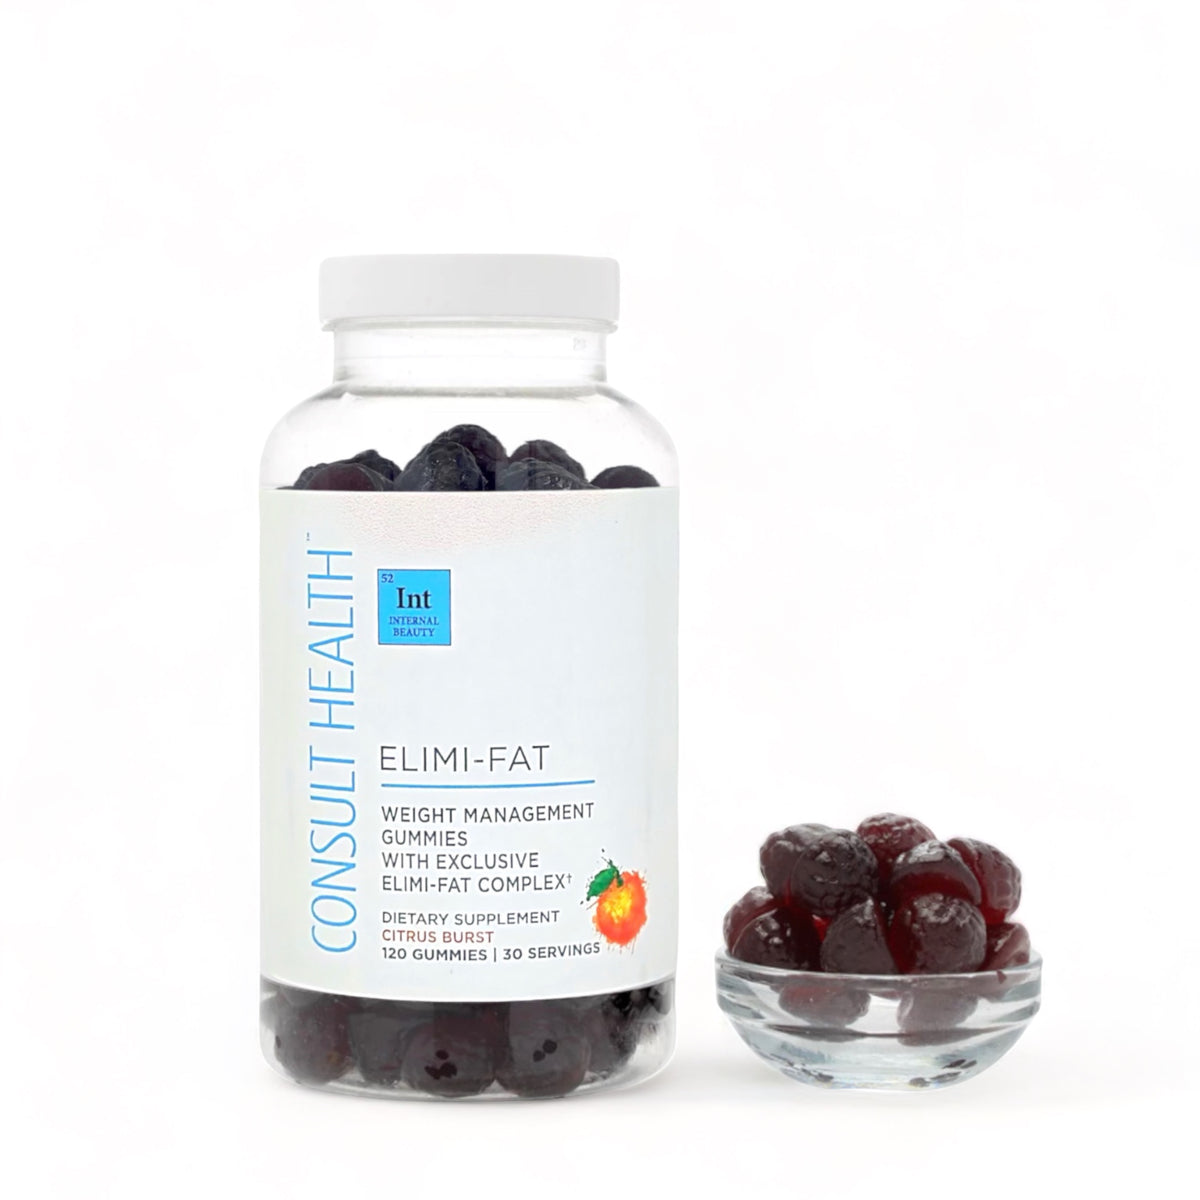 ELIMI-FAT Weight Management Gummies